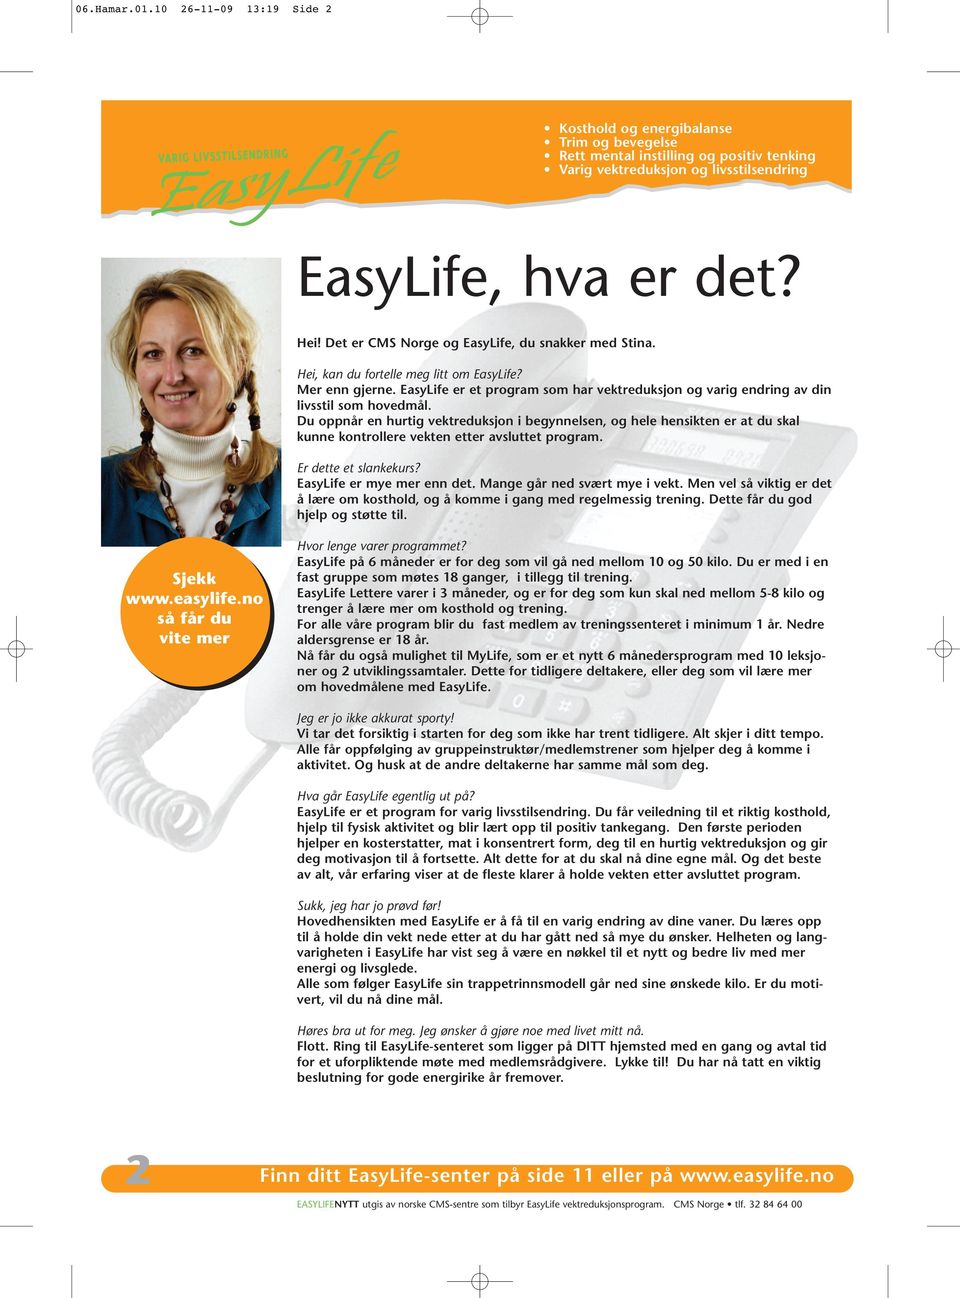 EasyLife er et program som har vektreduksjon og varig endring av din livsstil som hovedmål.